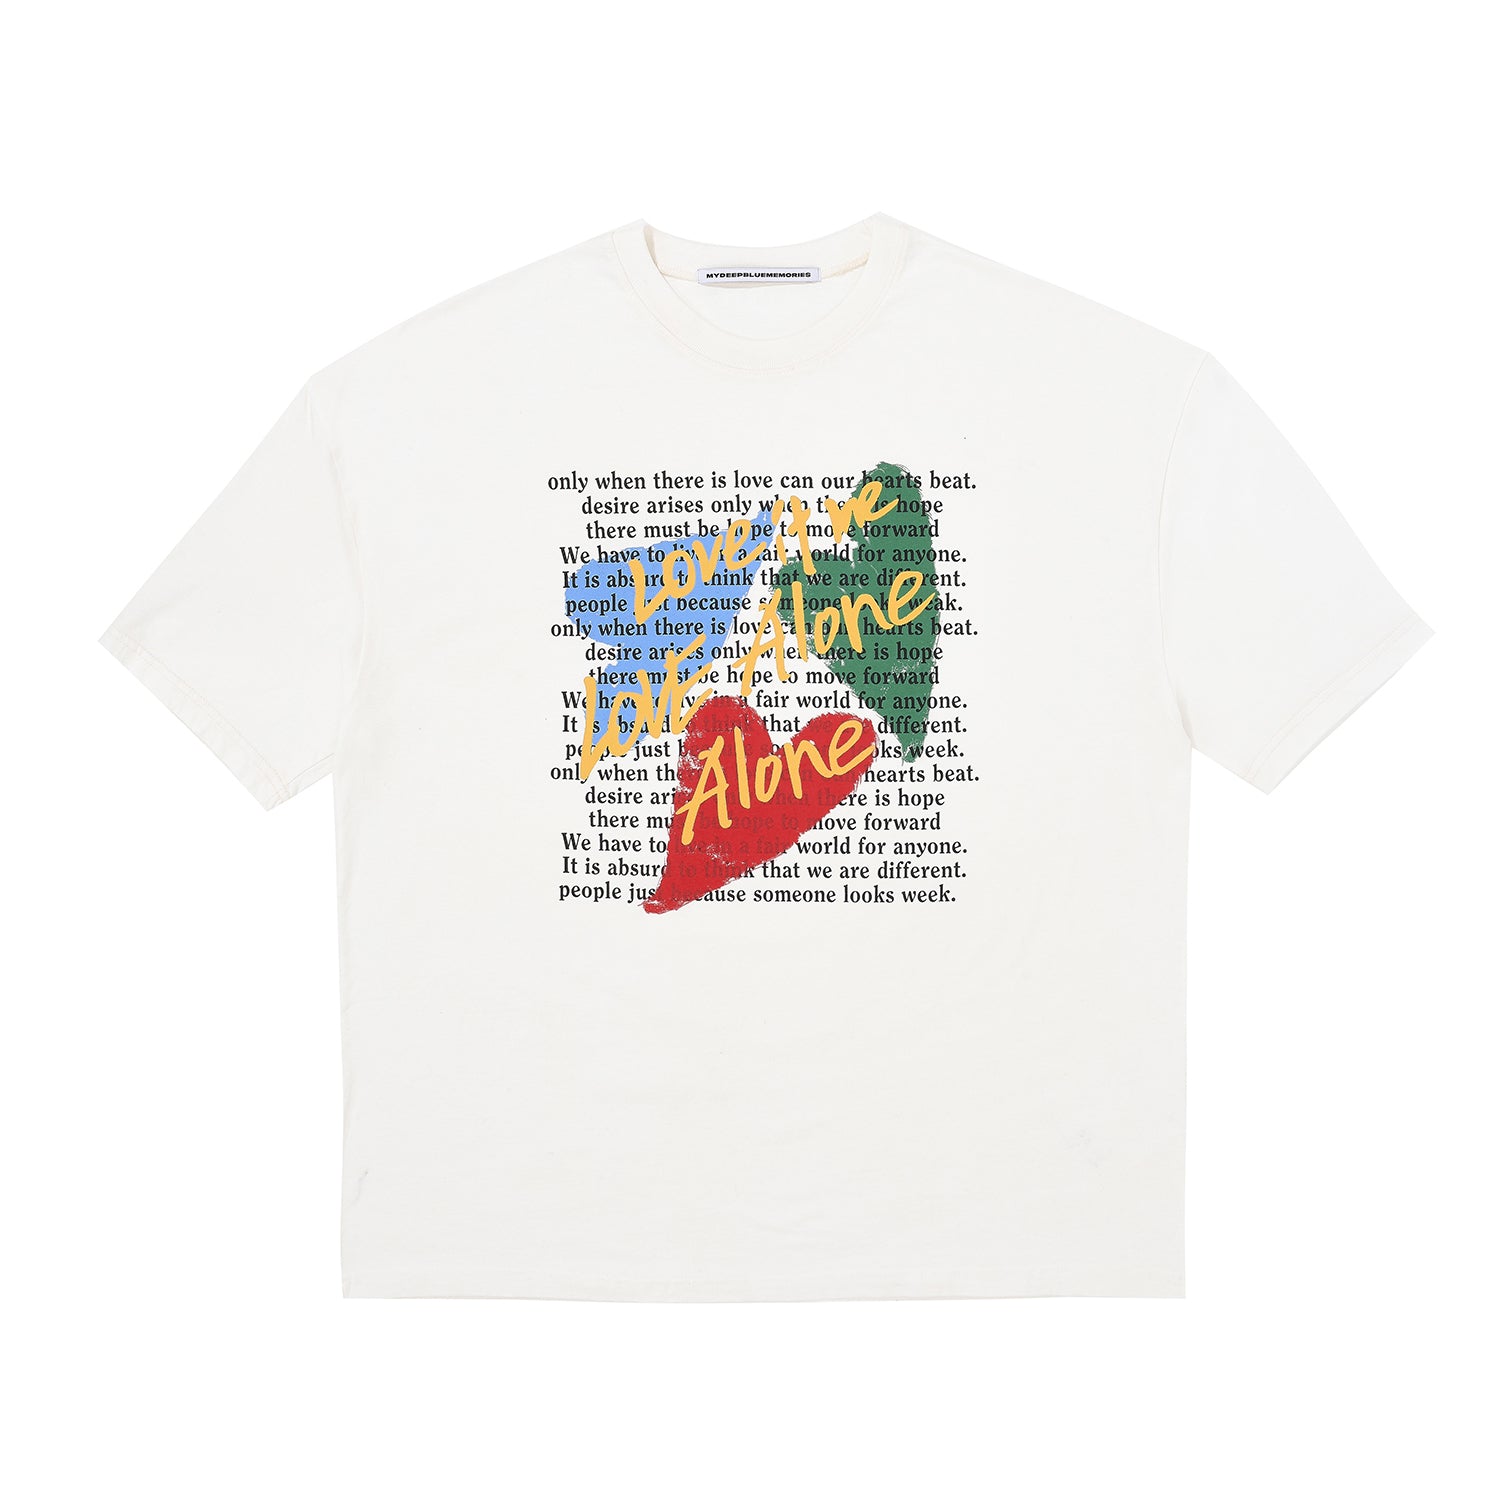 ラブイズアローンTシャツ / Love is alone t-shirt in white – 60